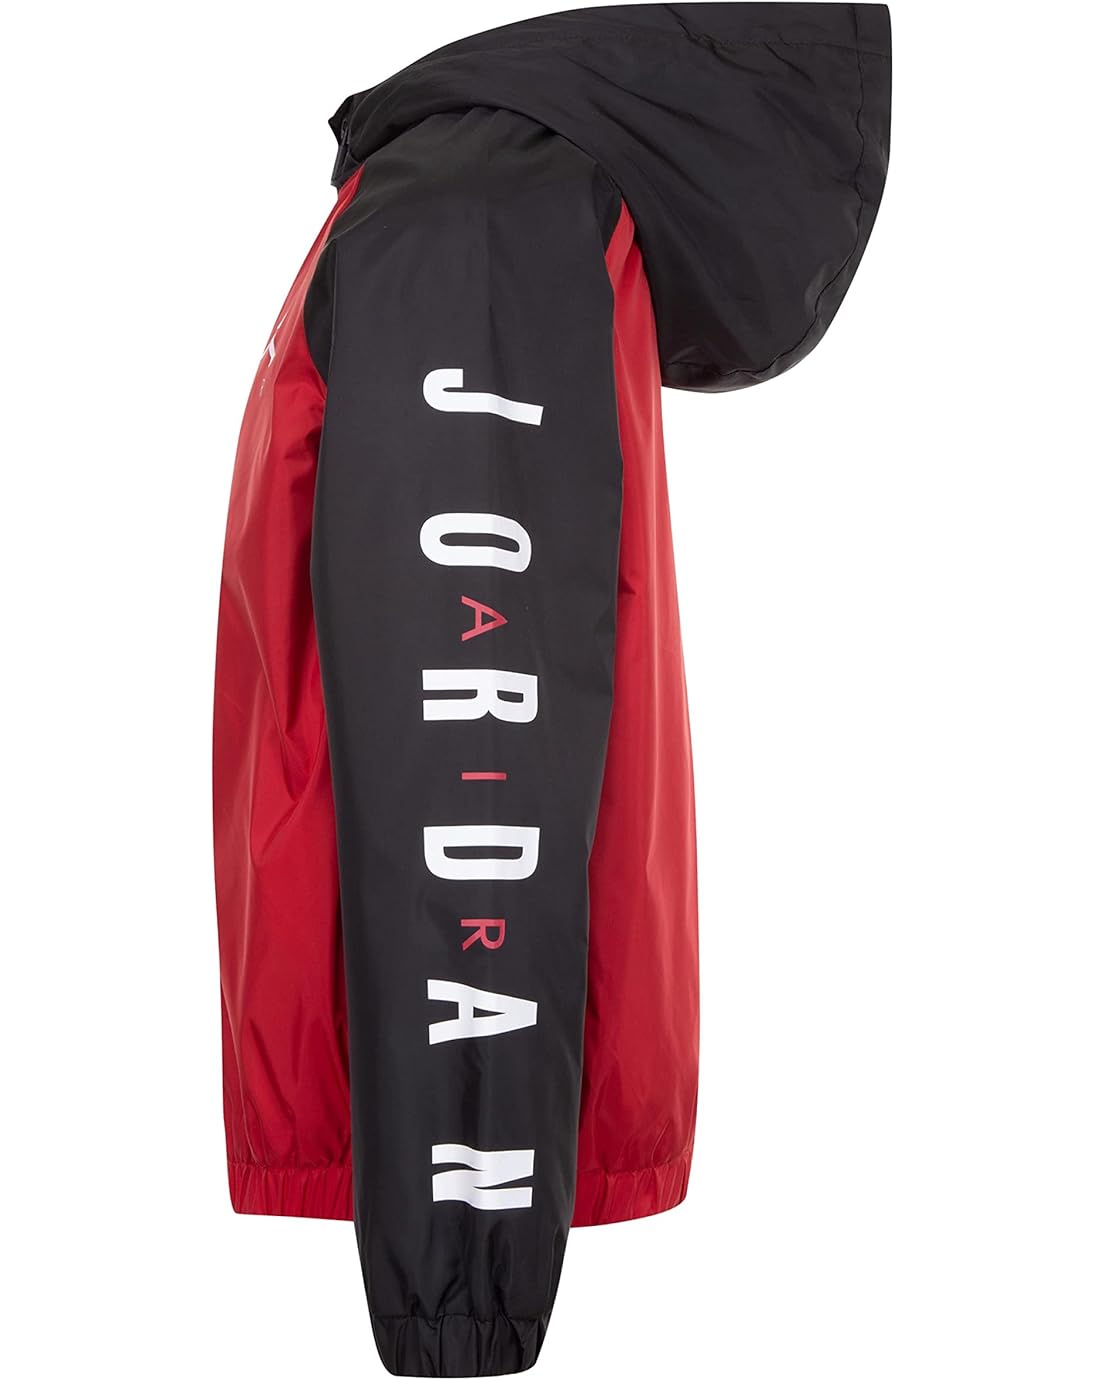  Jordan Kids Fleece Lined Windbreaker Jacket(Toddler/Little Kids/Big Kids)